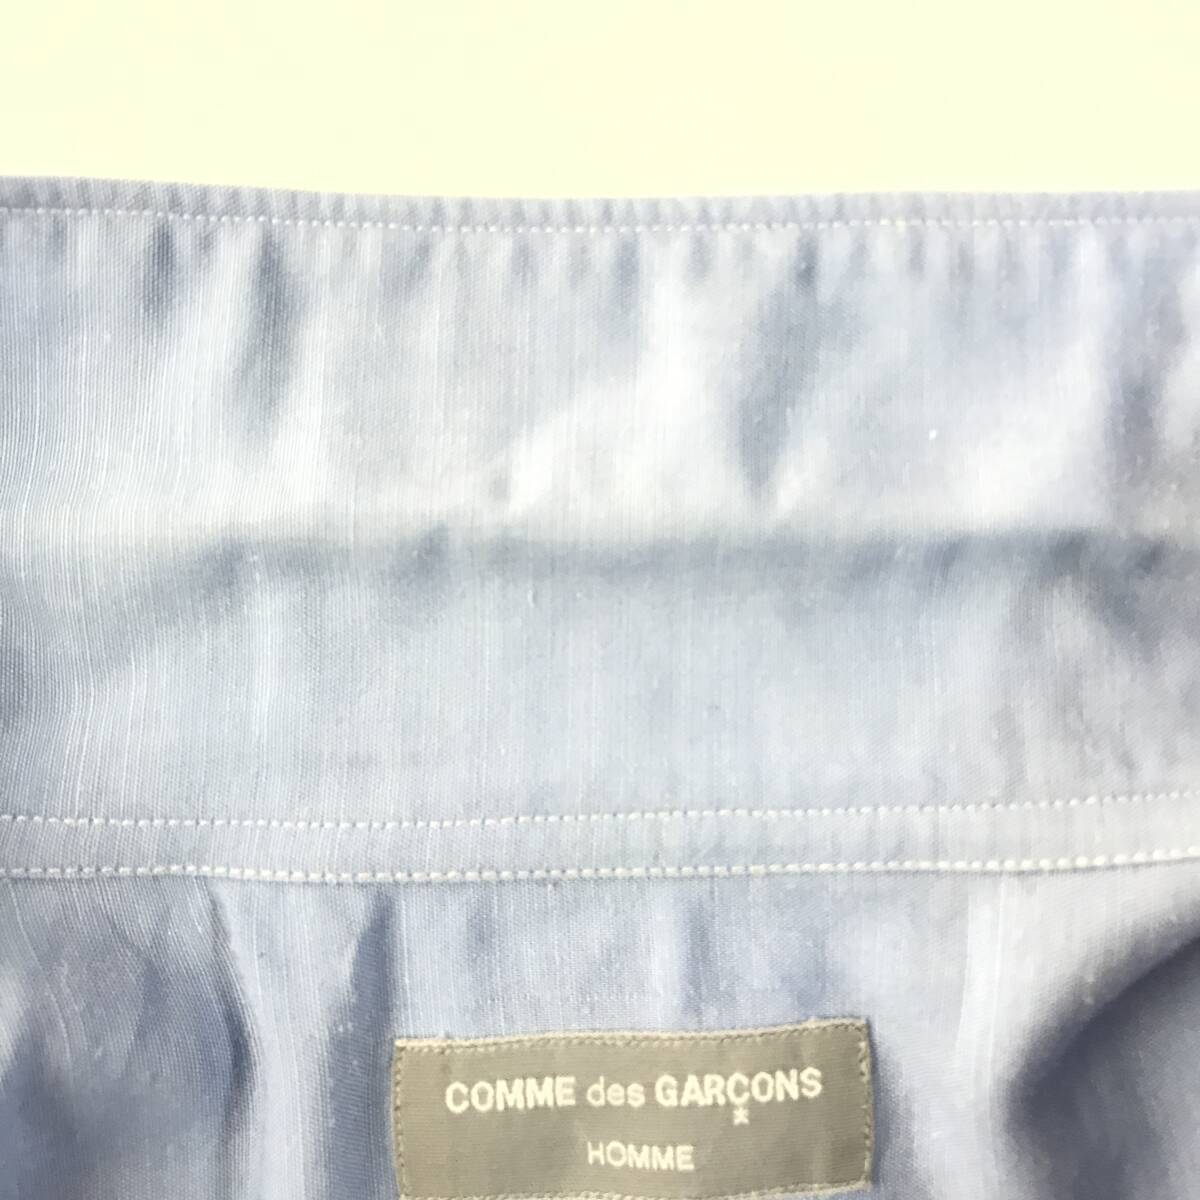 COMME des GARCONS HOMME コムデギャルソンオム デカボタン 初期開襟 半袖シャツ ブラウス_目立たない程度の襟元薄い汚れがります。